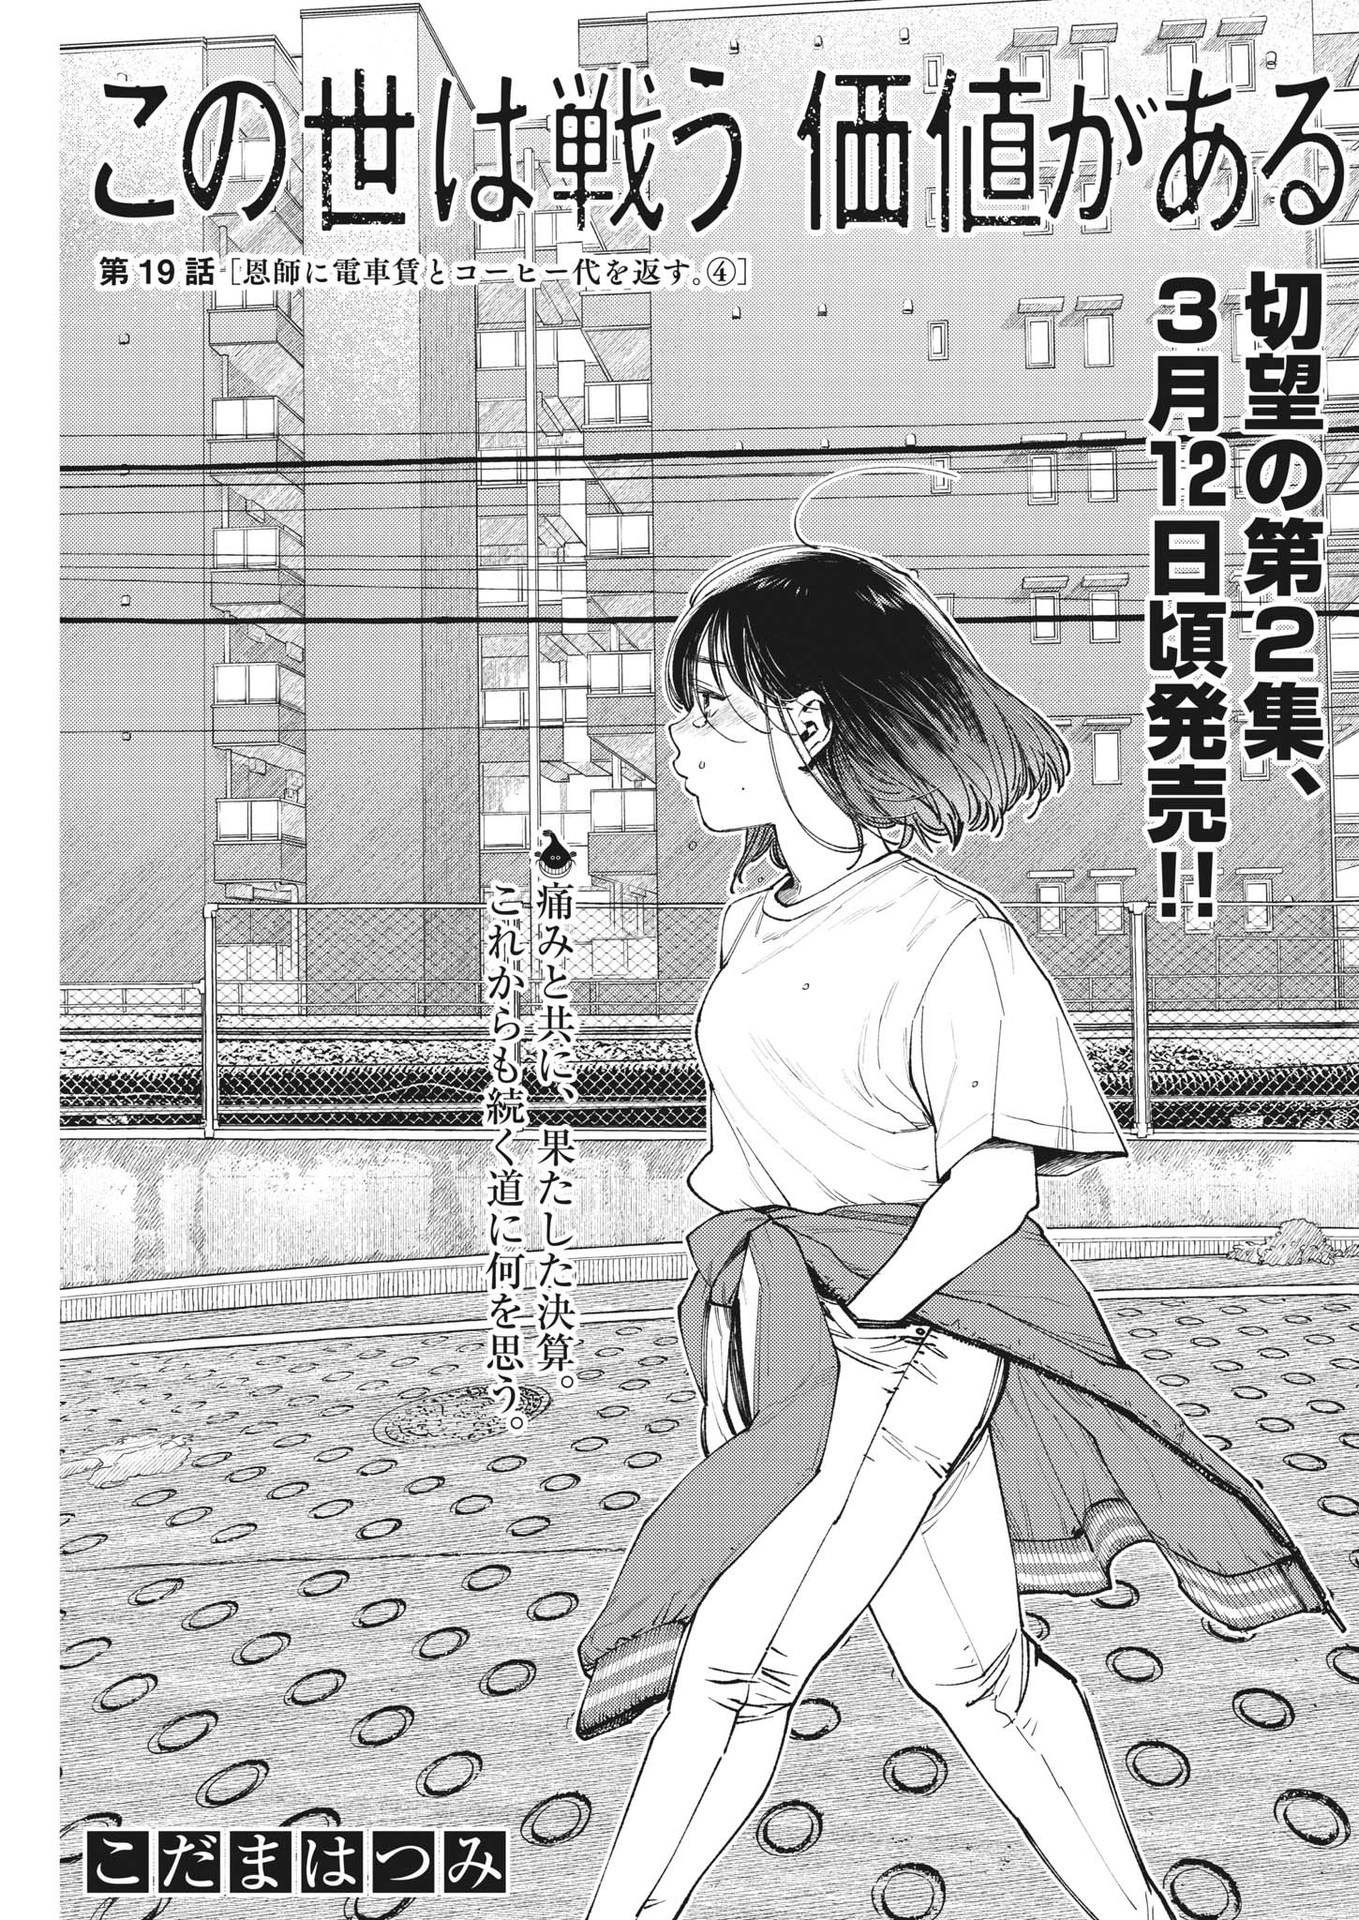 Konoyo wa Tatakau Kachi ga Aru  - Chapter 19 - Page 1